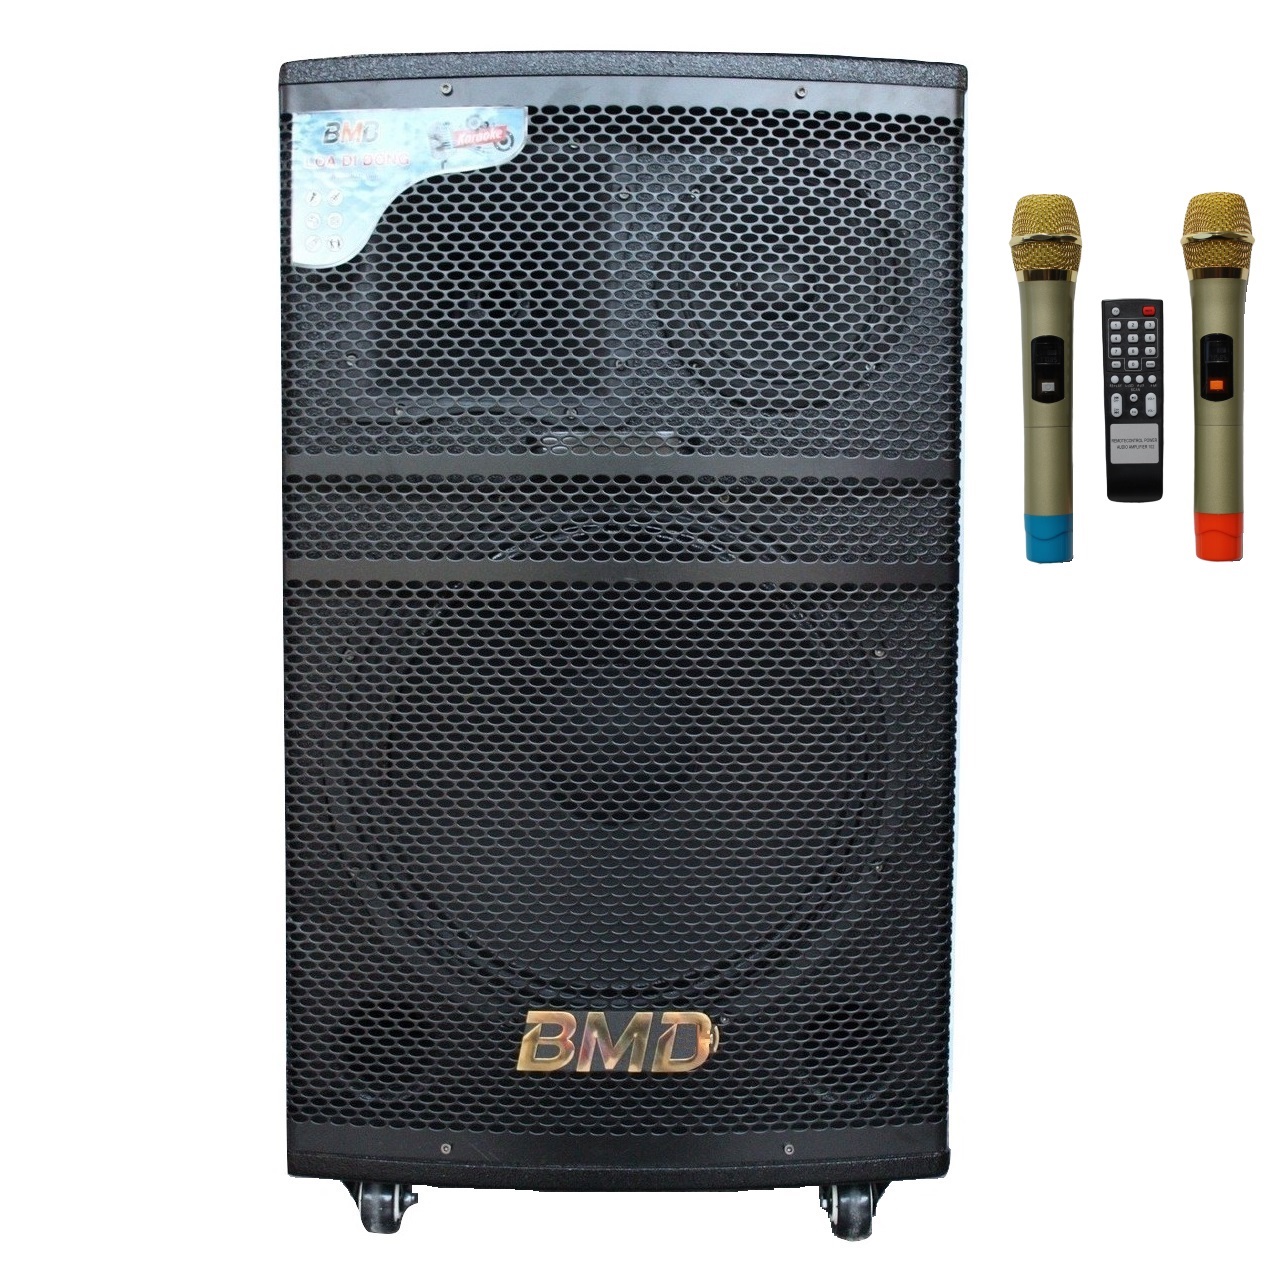 Loa Kéo Di Động Karaoke Bass 40 BMD LK-40B1 (800W) 4 Tấc - Chính Hãng